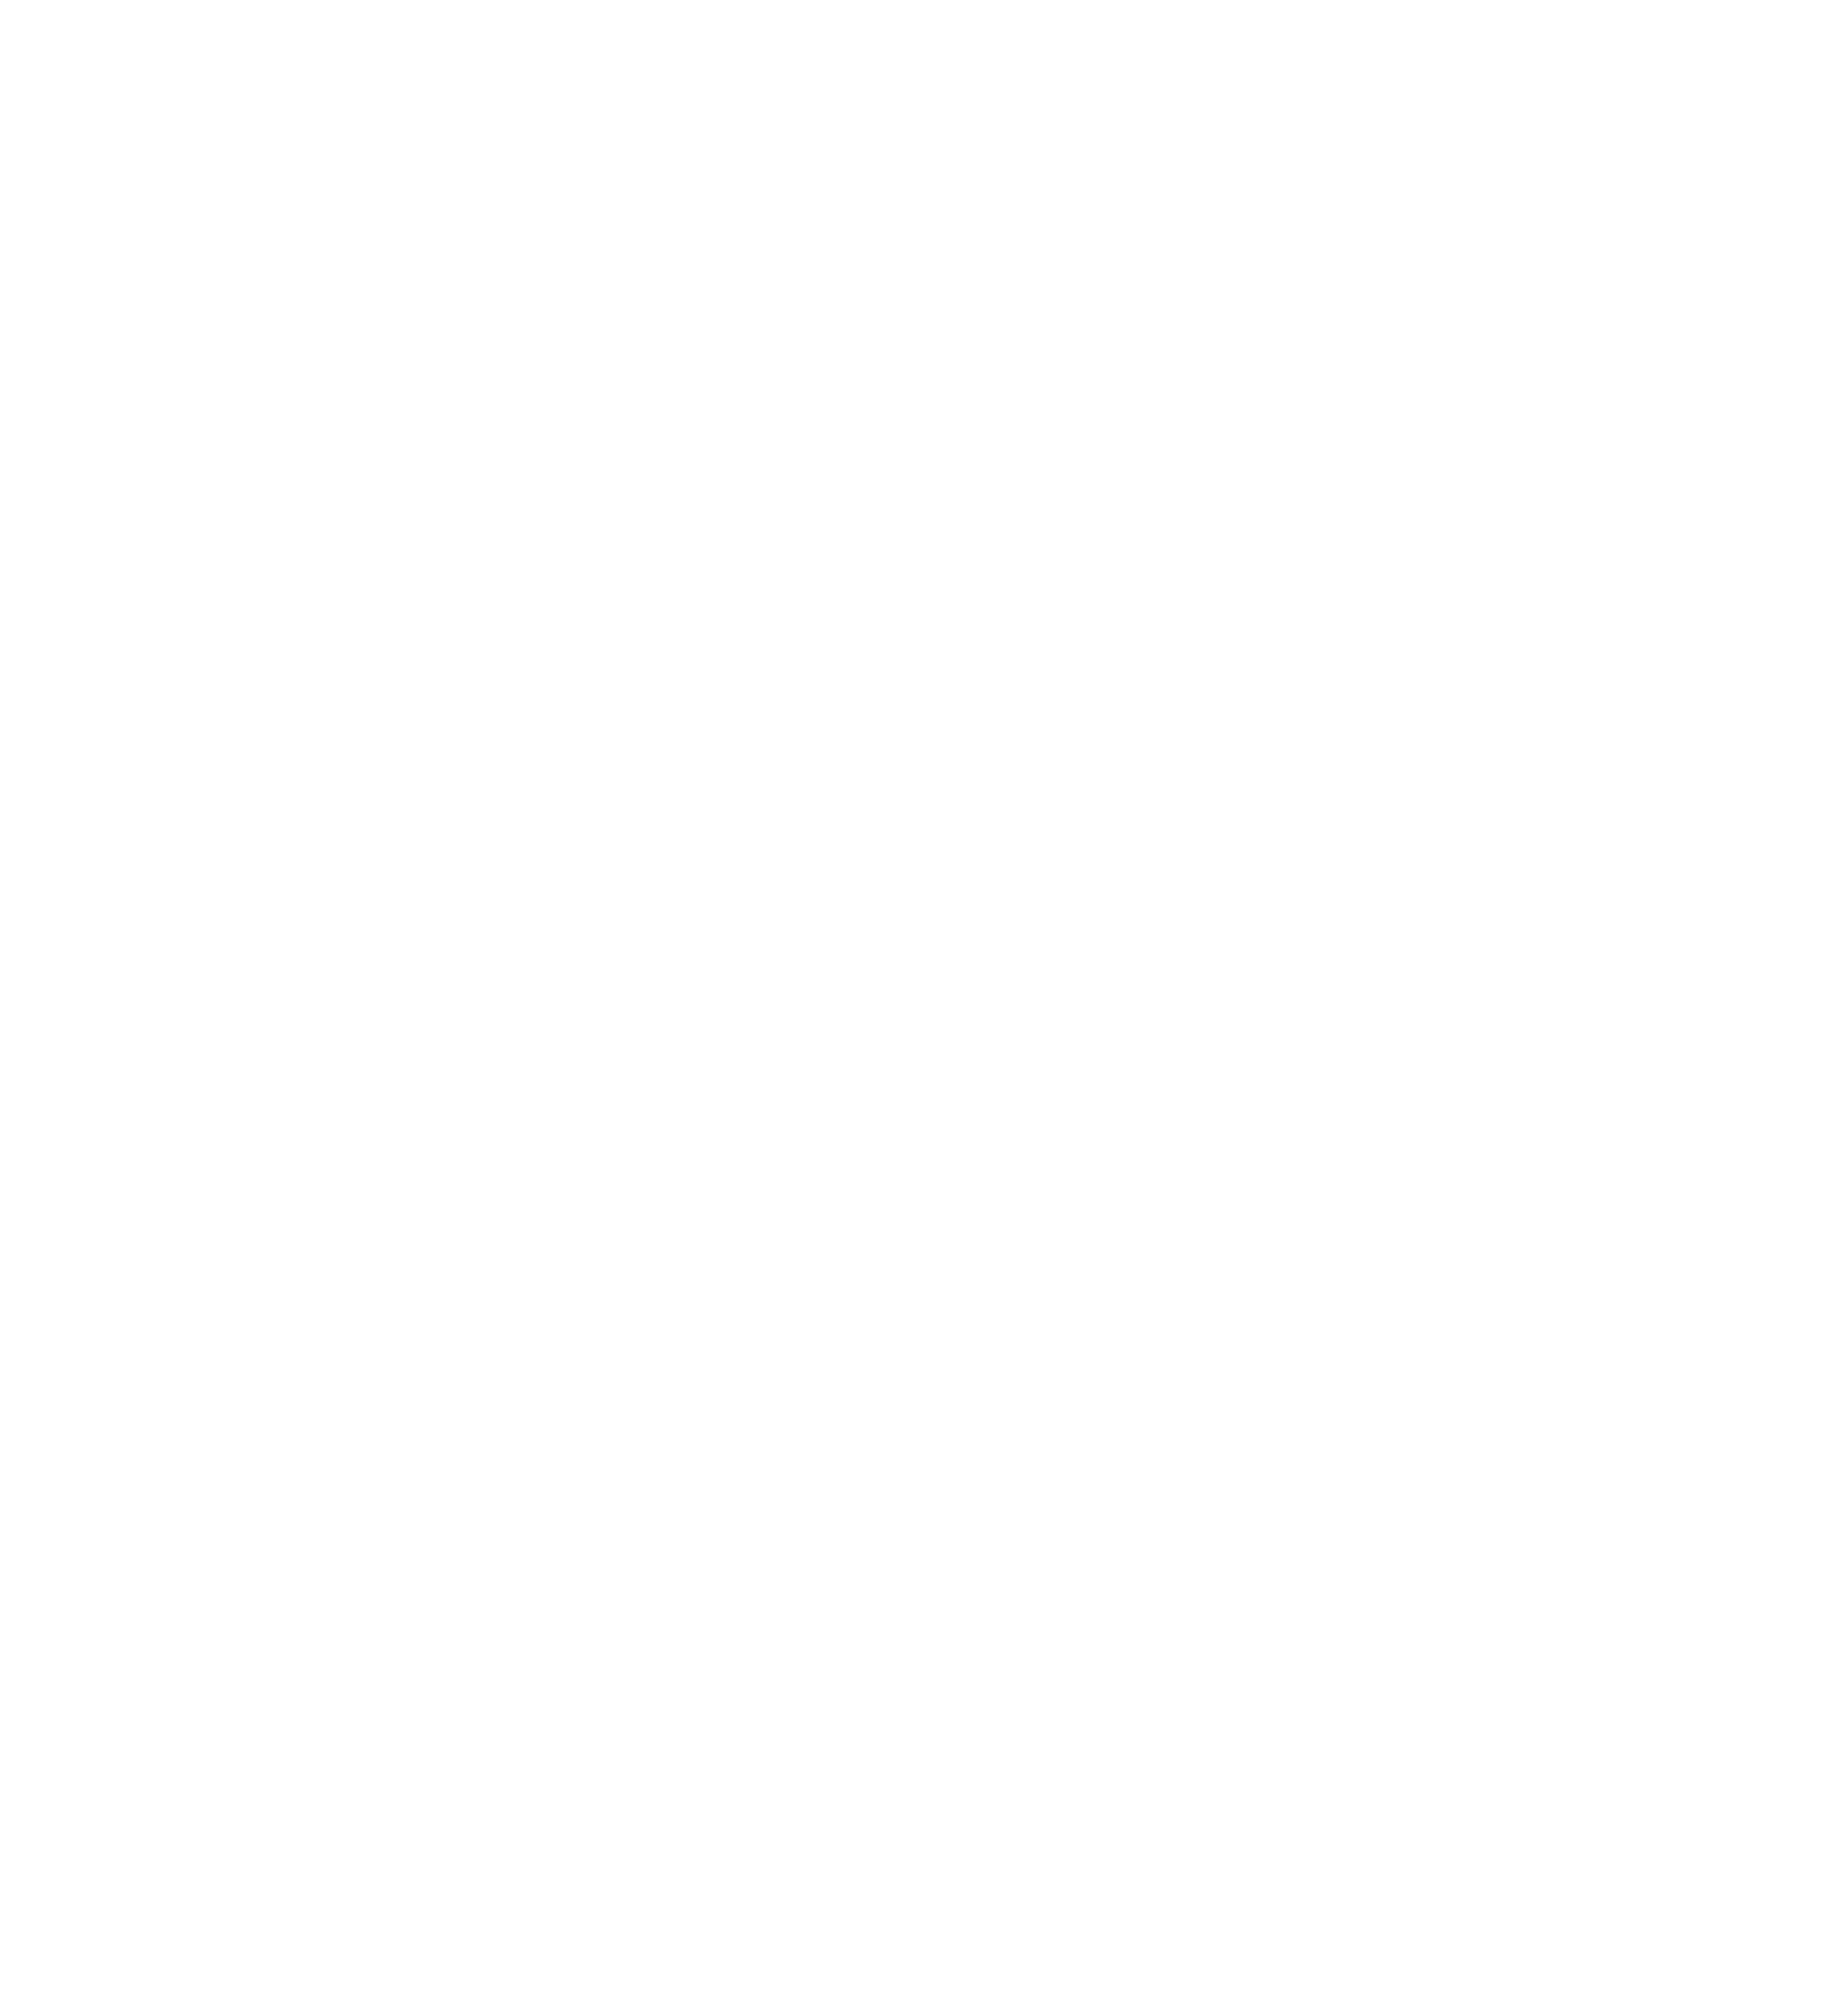 Rachel Bloom